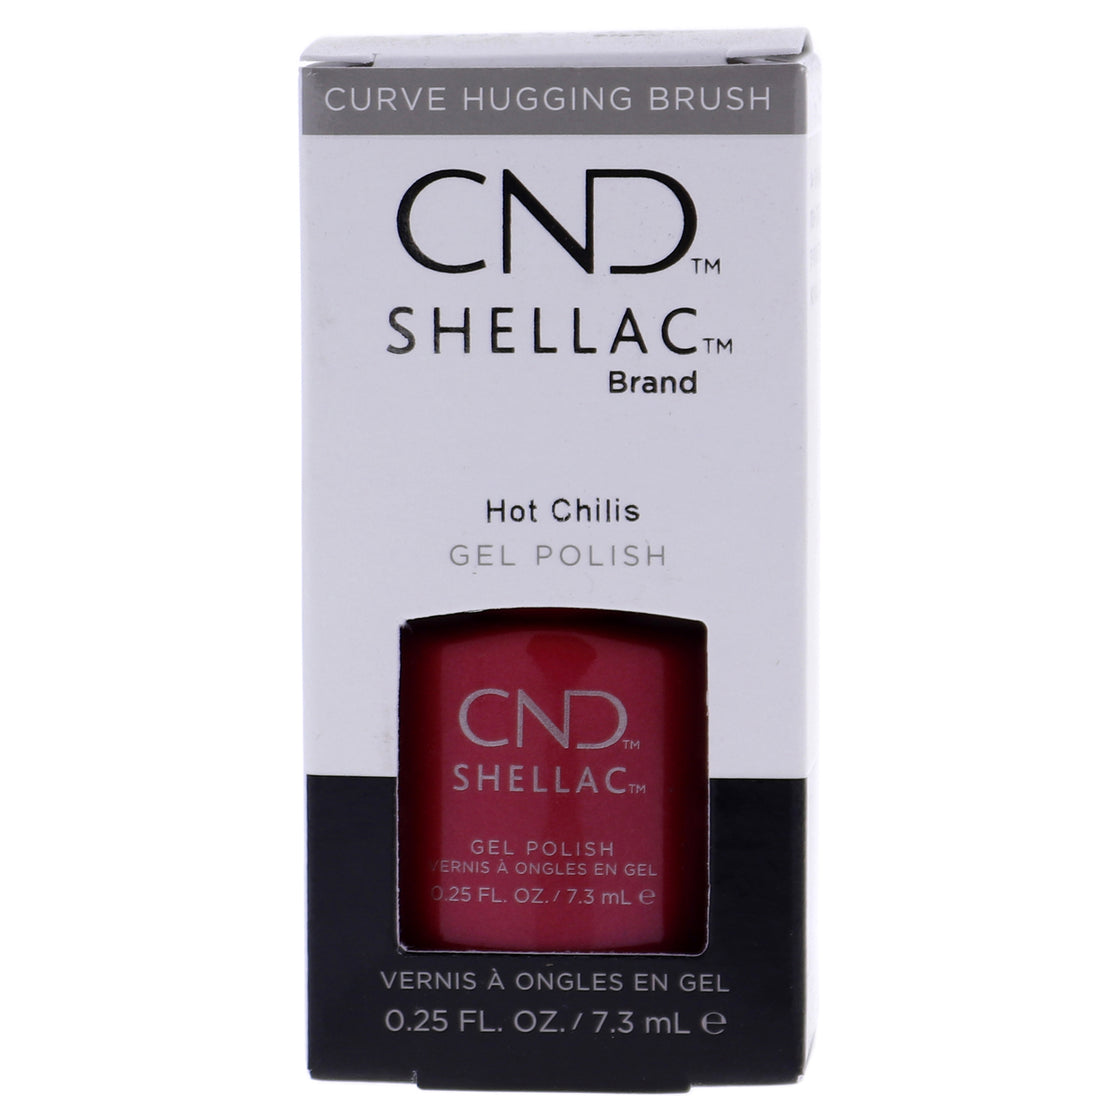 Shellac Nail Color - Hot Chilis by CND for Women - 0.25 oz Nail Polish